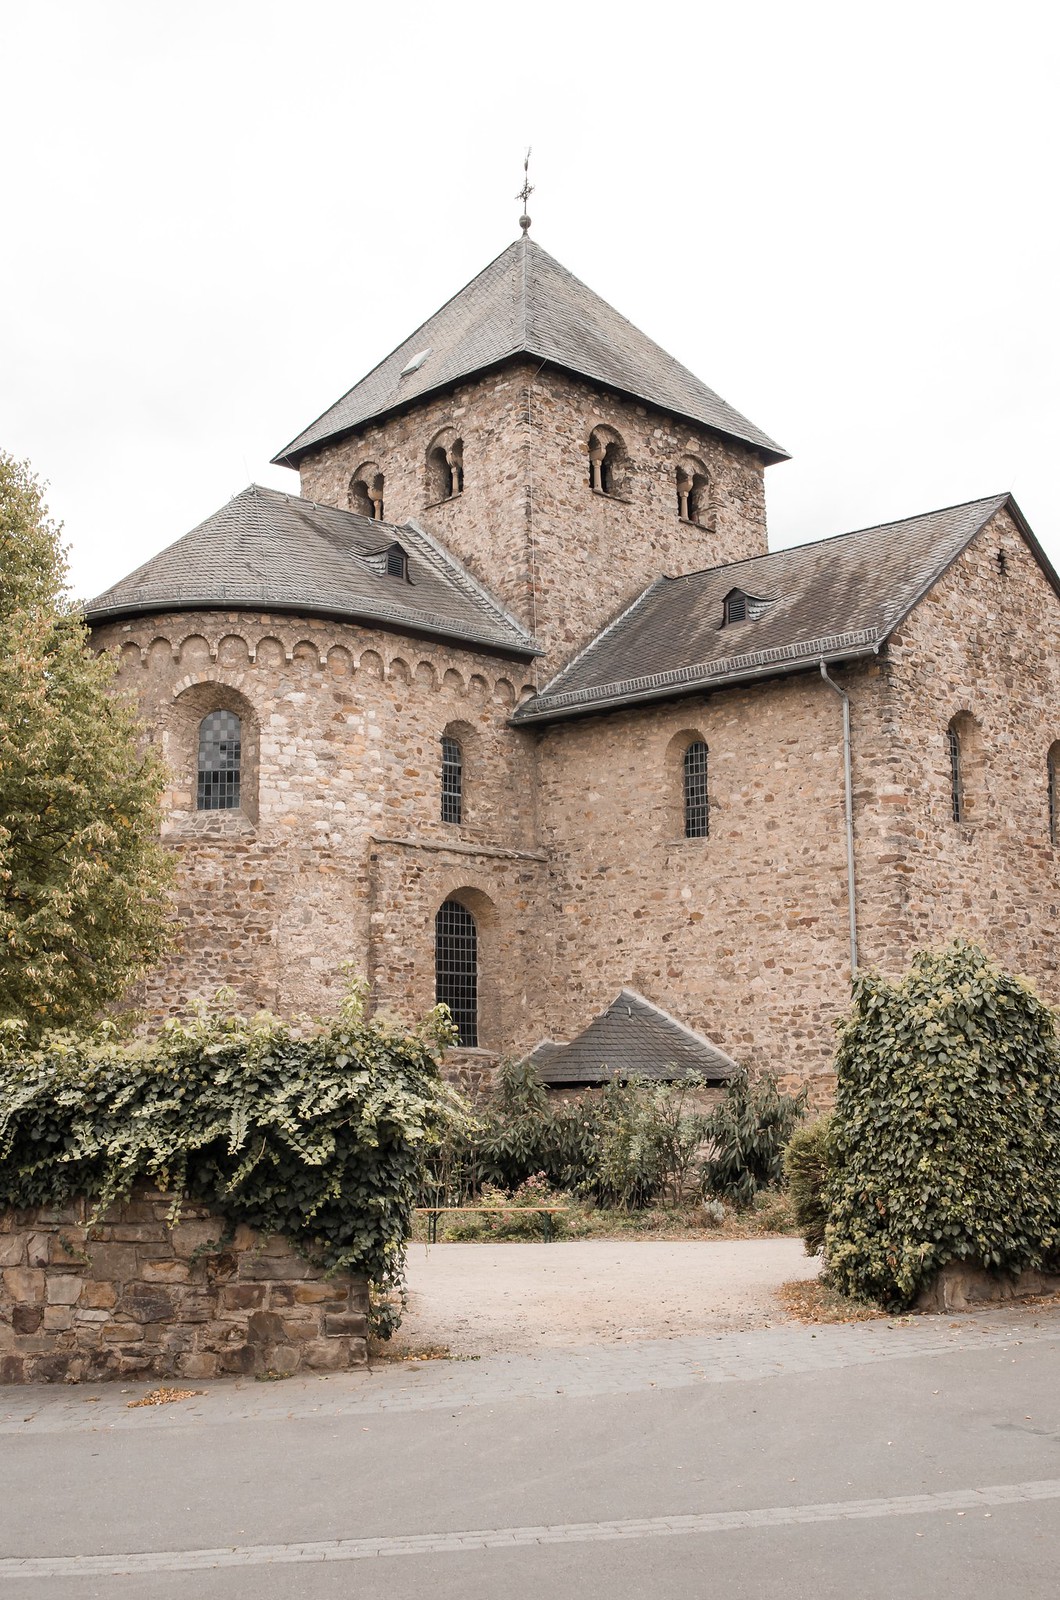 Viaje a región vinícola de Rheingau | ©mvesblog